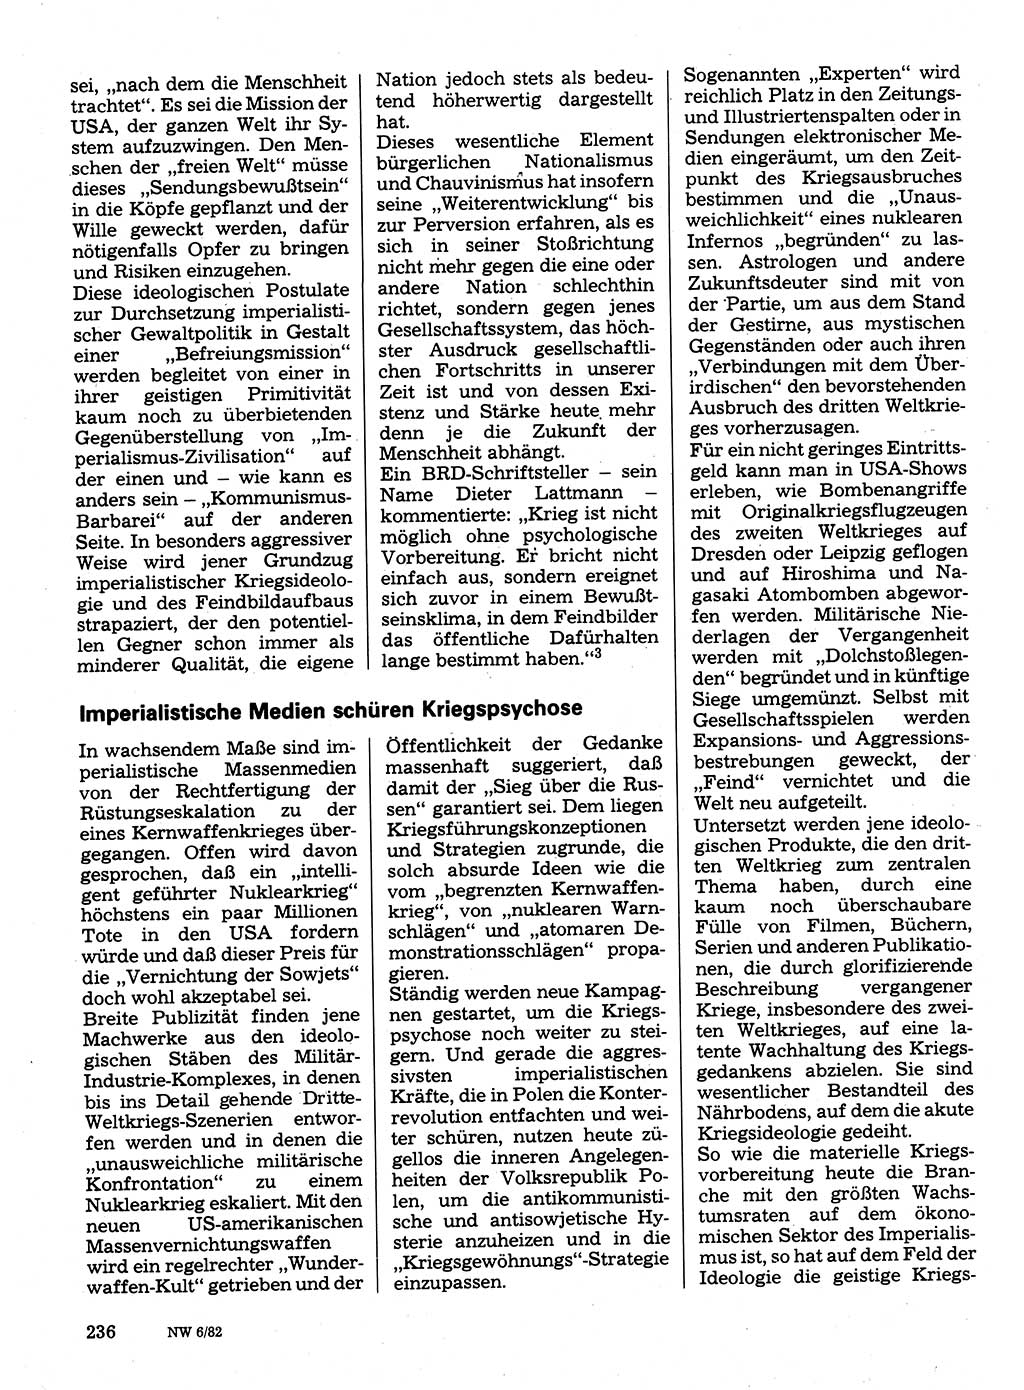 Neuer Weg (NW), Organ des Zentralkomitees (ZK) der SED (Sozialistische Einheitspartei Deutschlands) für Fragen des Parteilebens, 37. Jahrgang [Deutsche Demokratische Republik (DDR)] 1982, Seite 236 (NW ZK SED DDR 1982, S. 236)